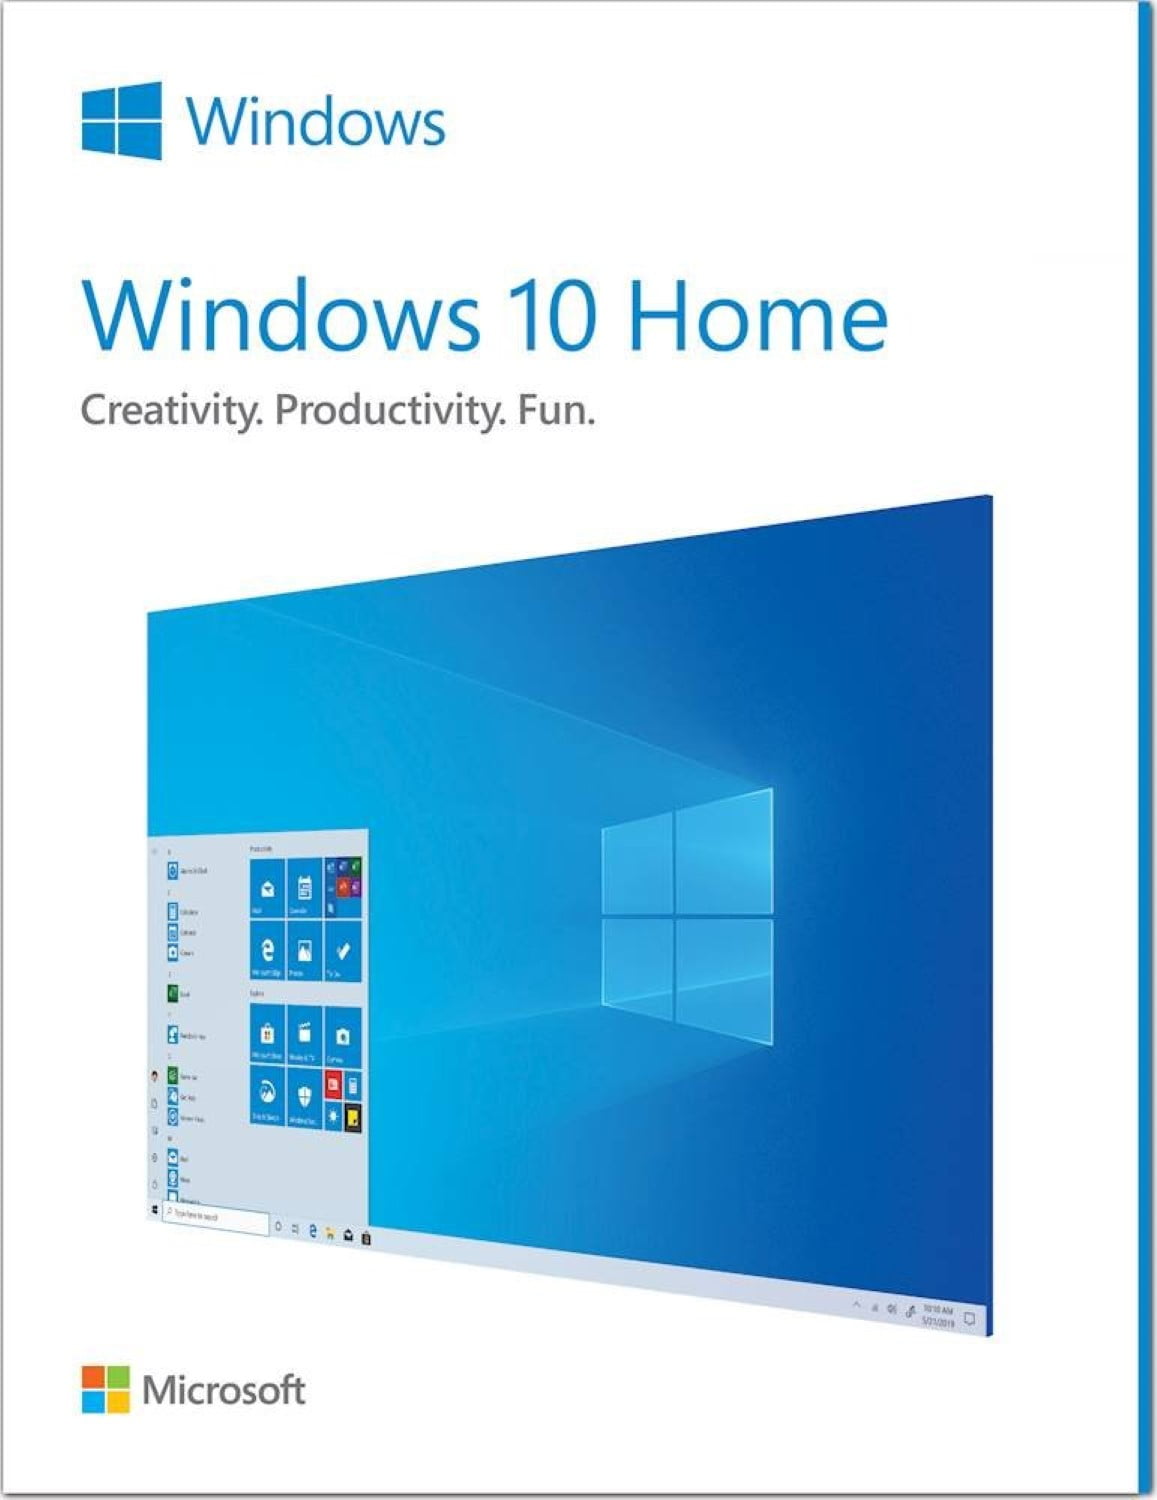 Atualização Directx 12 Windows10 - Microsoft Community